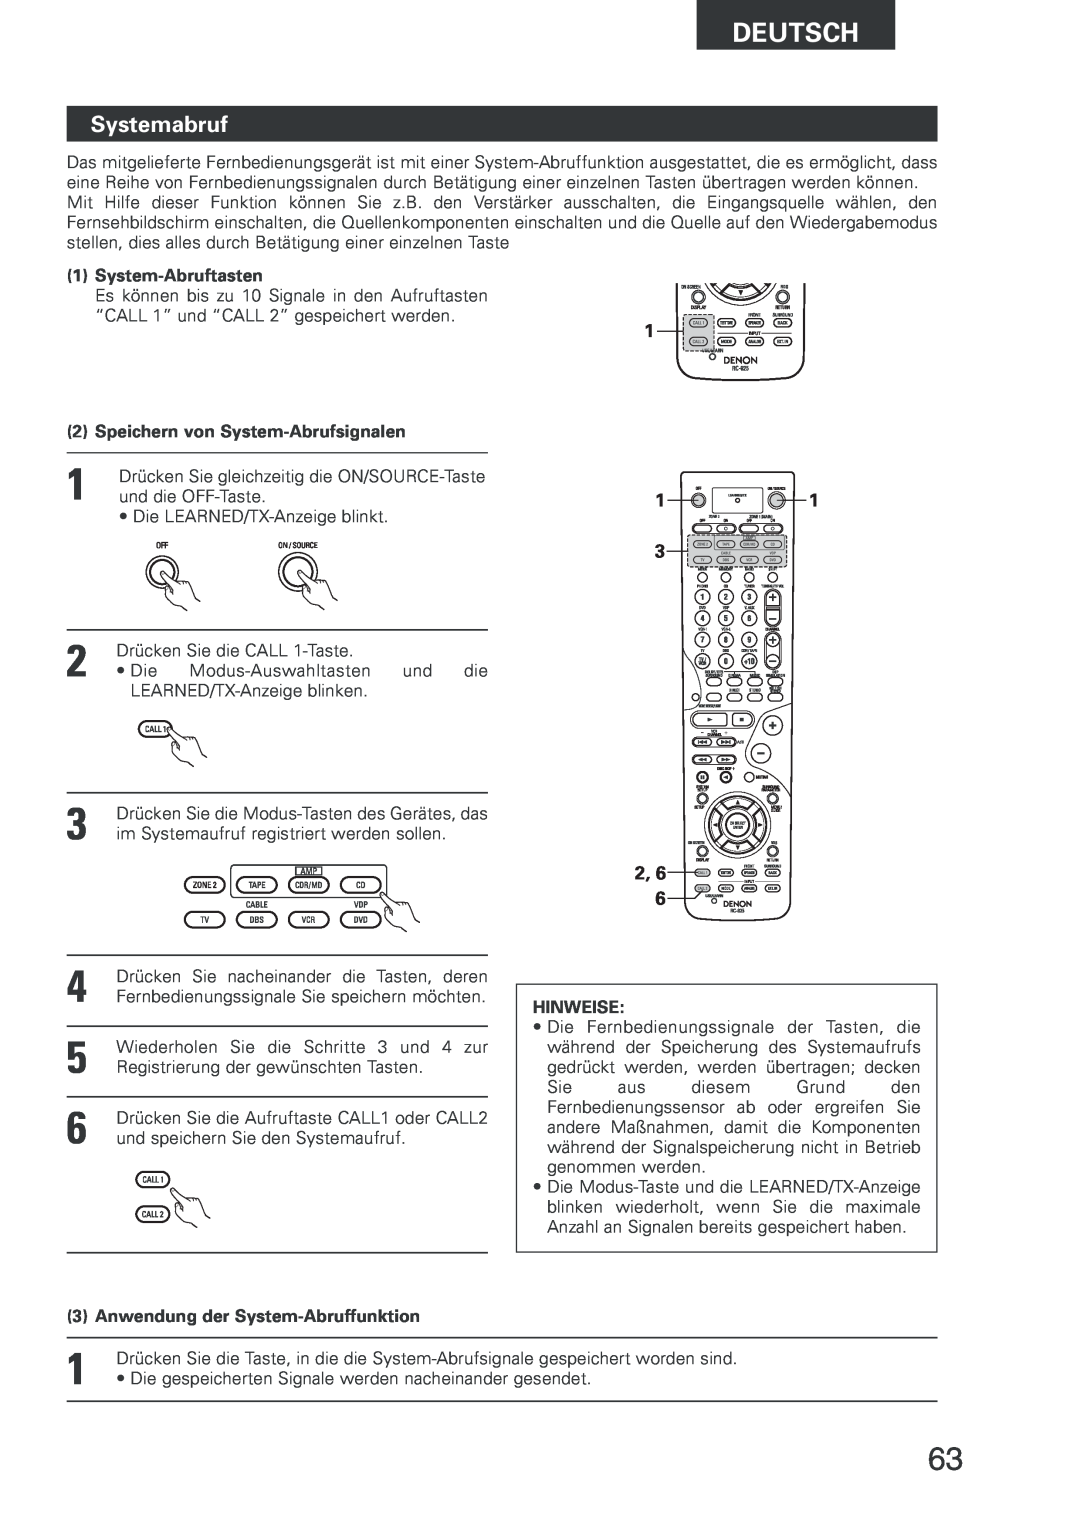 Denon AVR-2803 manual Systemabruf, System-Abruftasten, Speichern von System-Abrufsignalen, 2, 6, Deutsch, Hinweise 